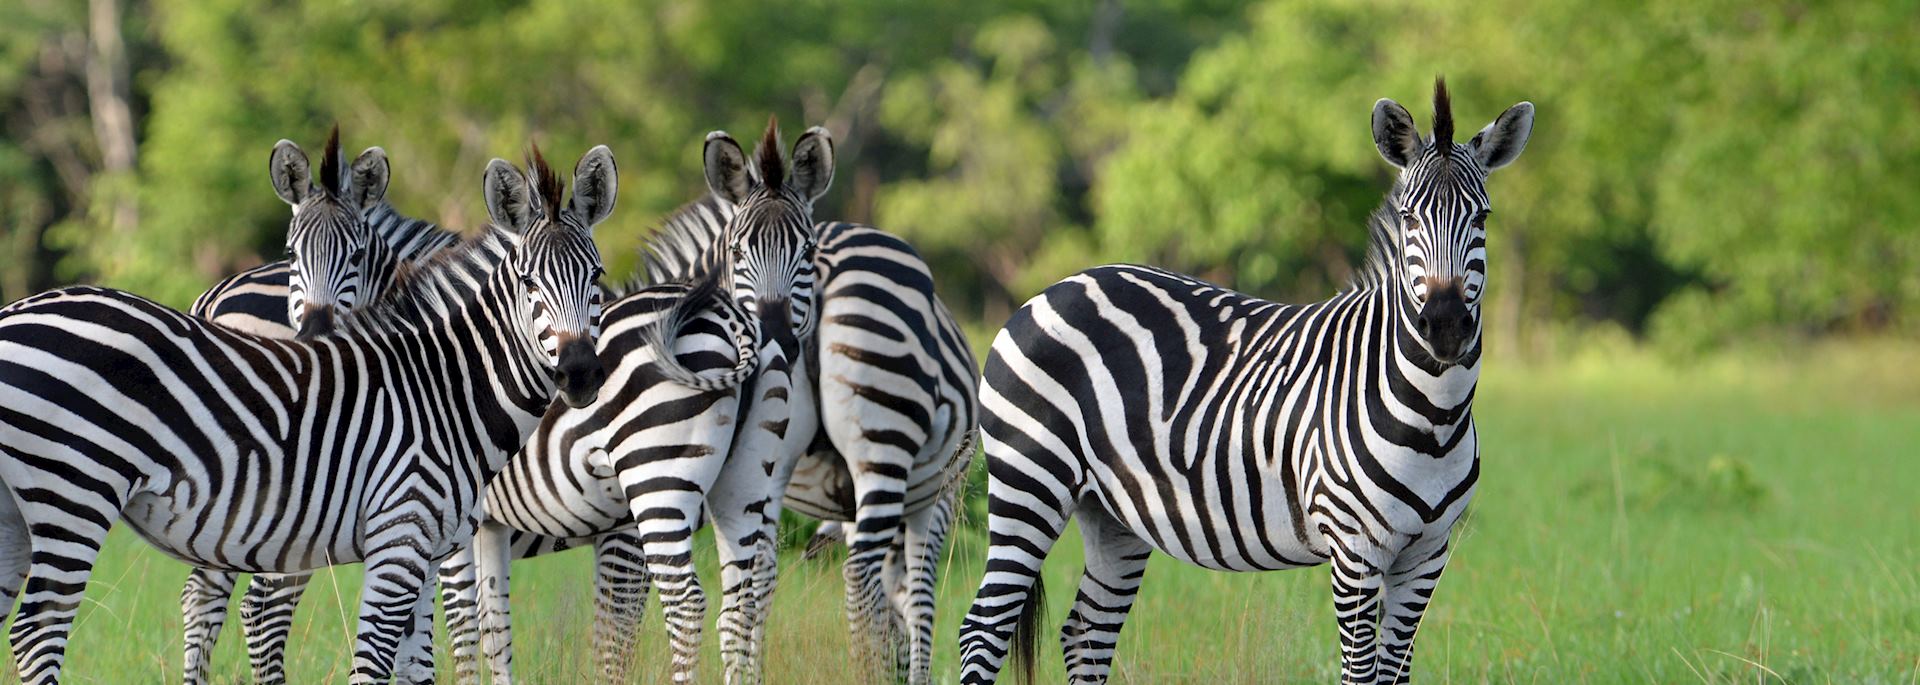 Zebra spotted in Zambia's green season